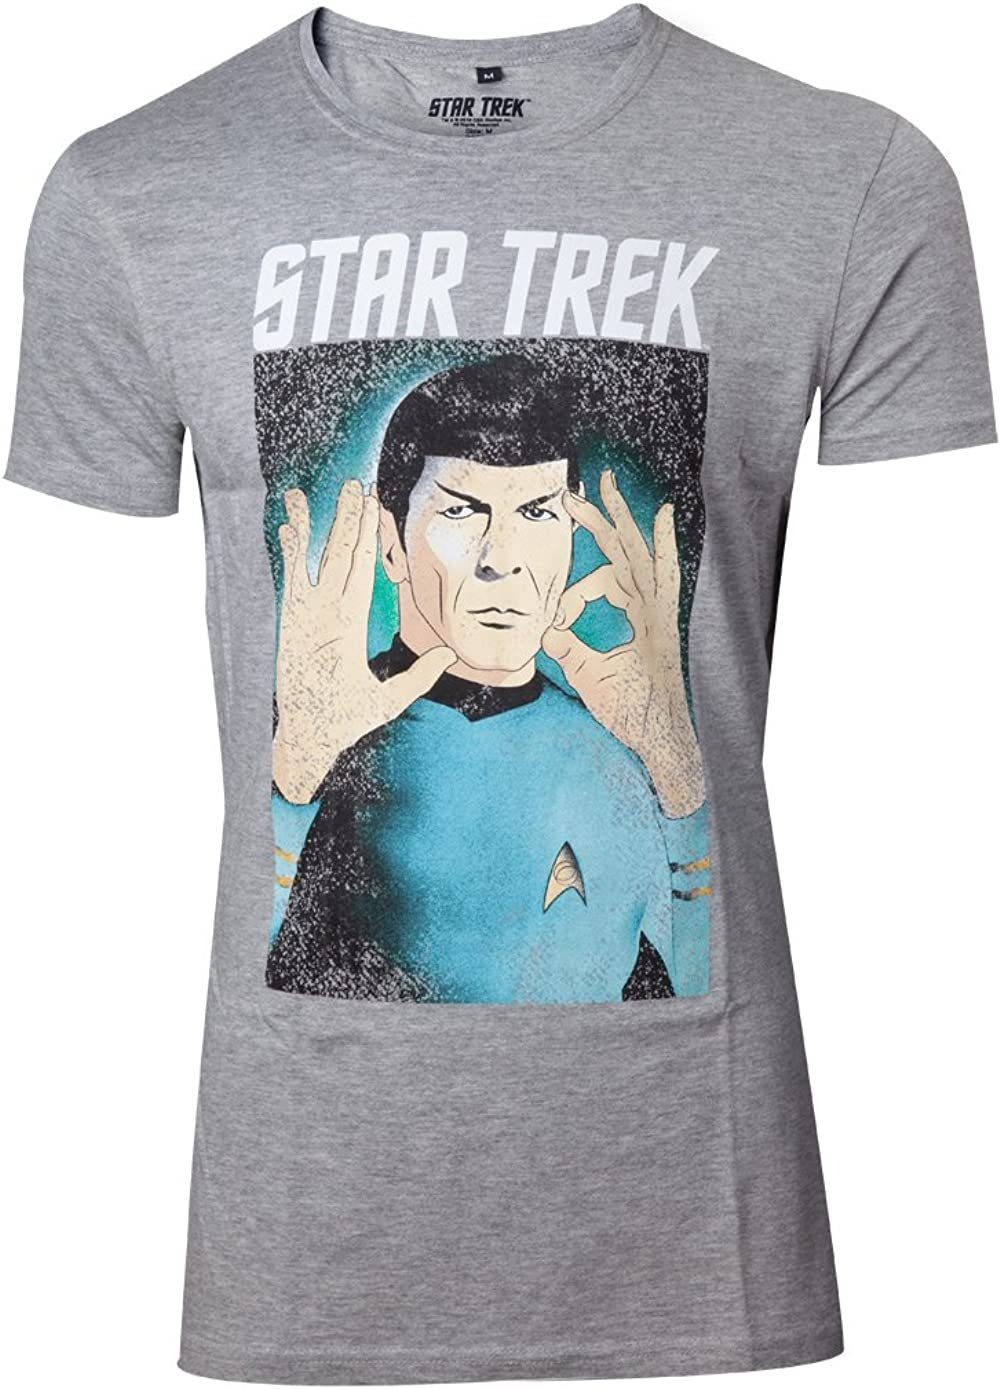 Hellgrau L T-Shirt Print-Shirt Logic S Erwachsene Herren Trek MELIERT Star XL M Größen the Respect STARTREK